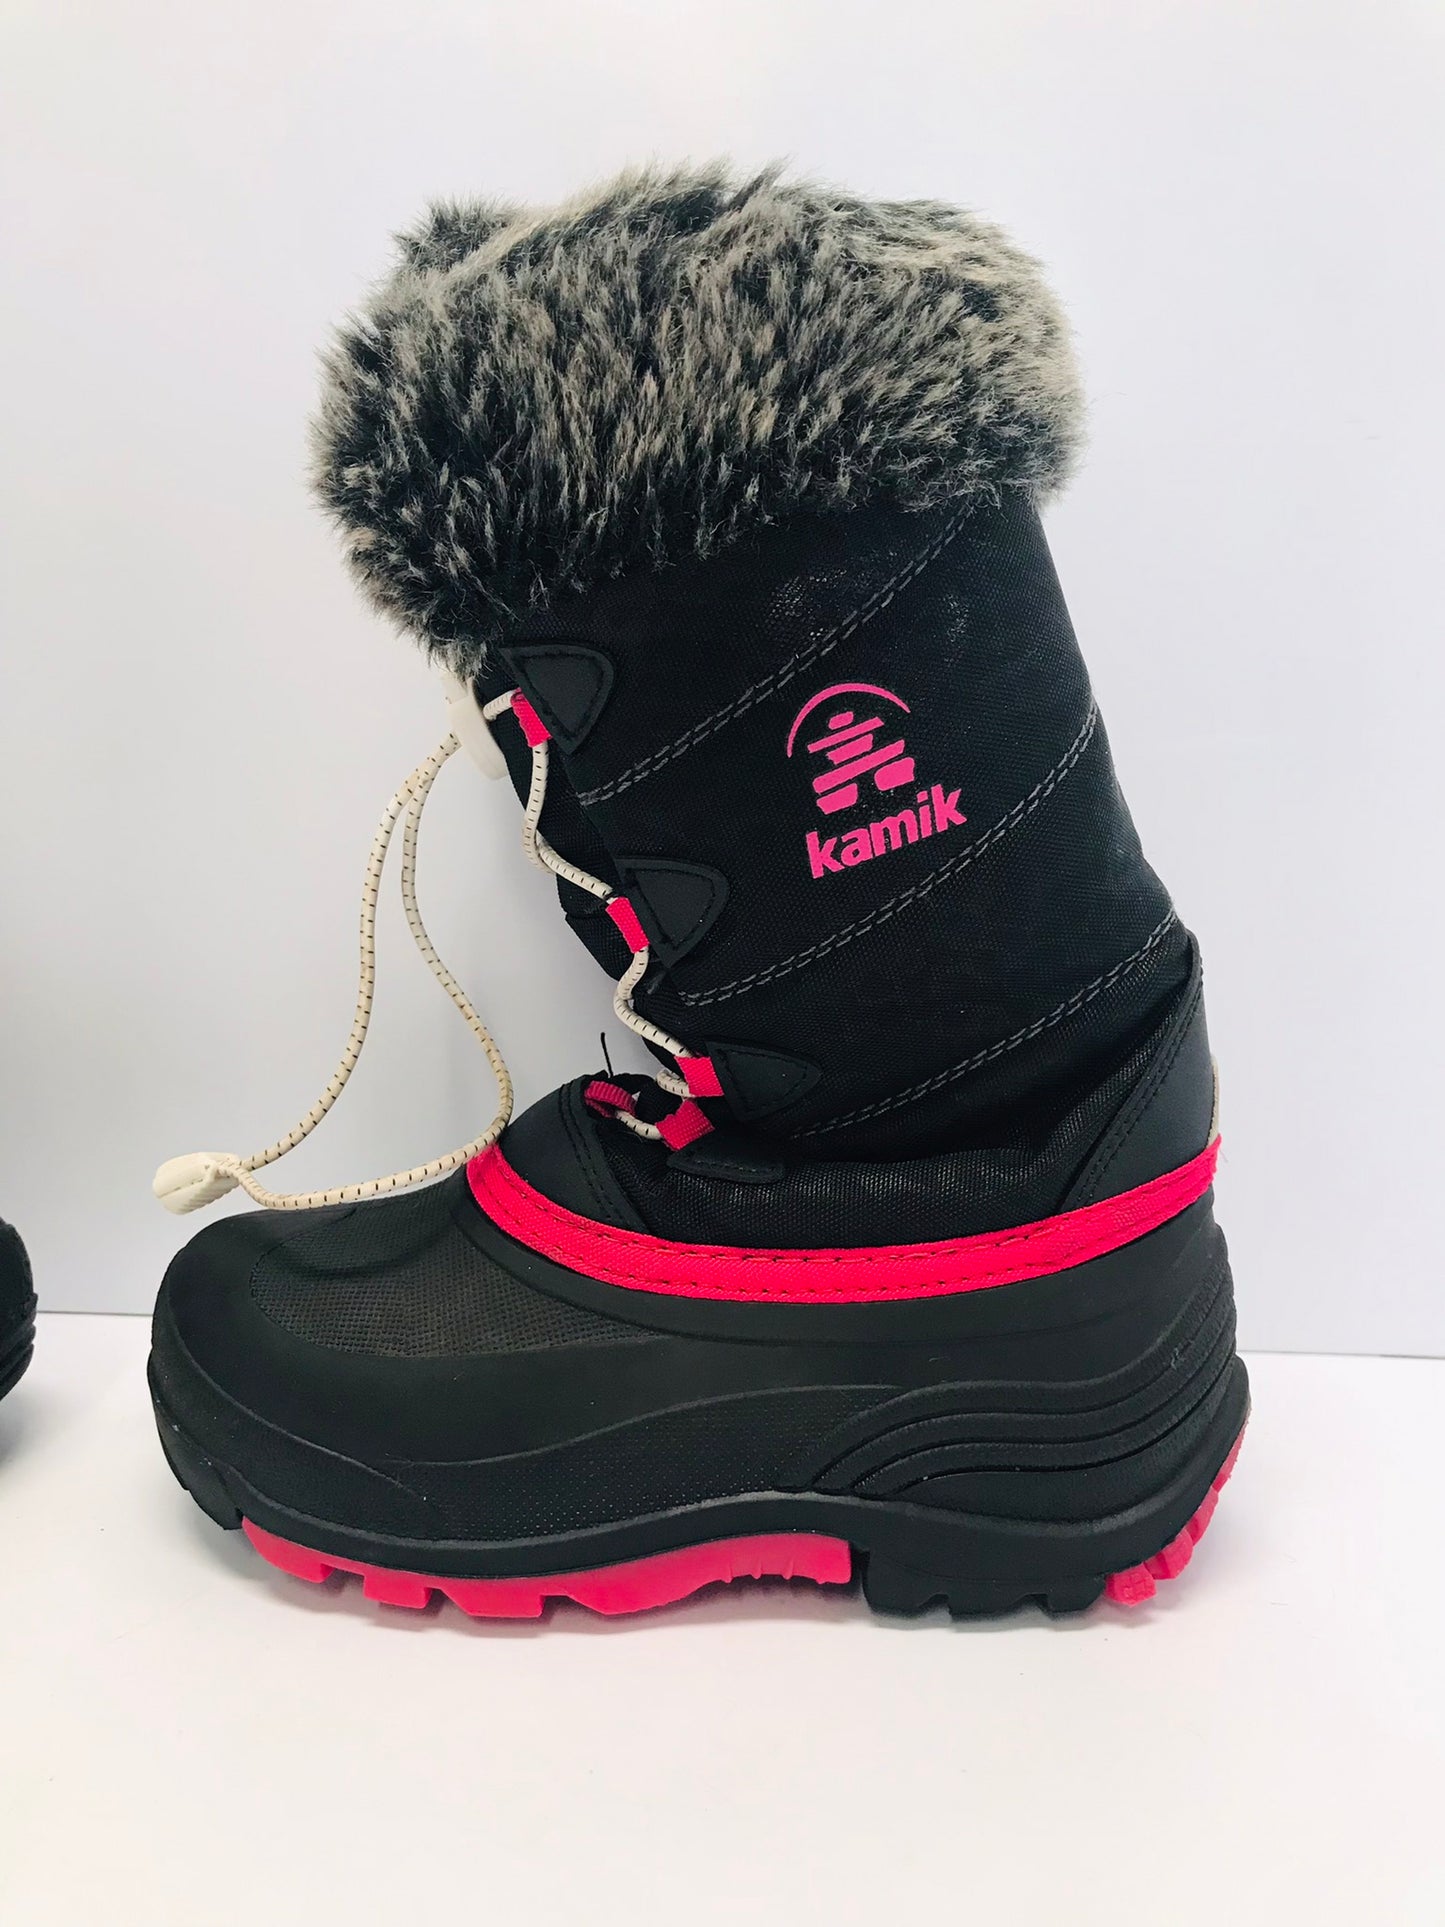 Winter Boots Child Size 1 Kamik Black Fushia With Faux Fur Excellent